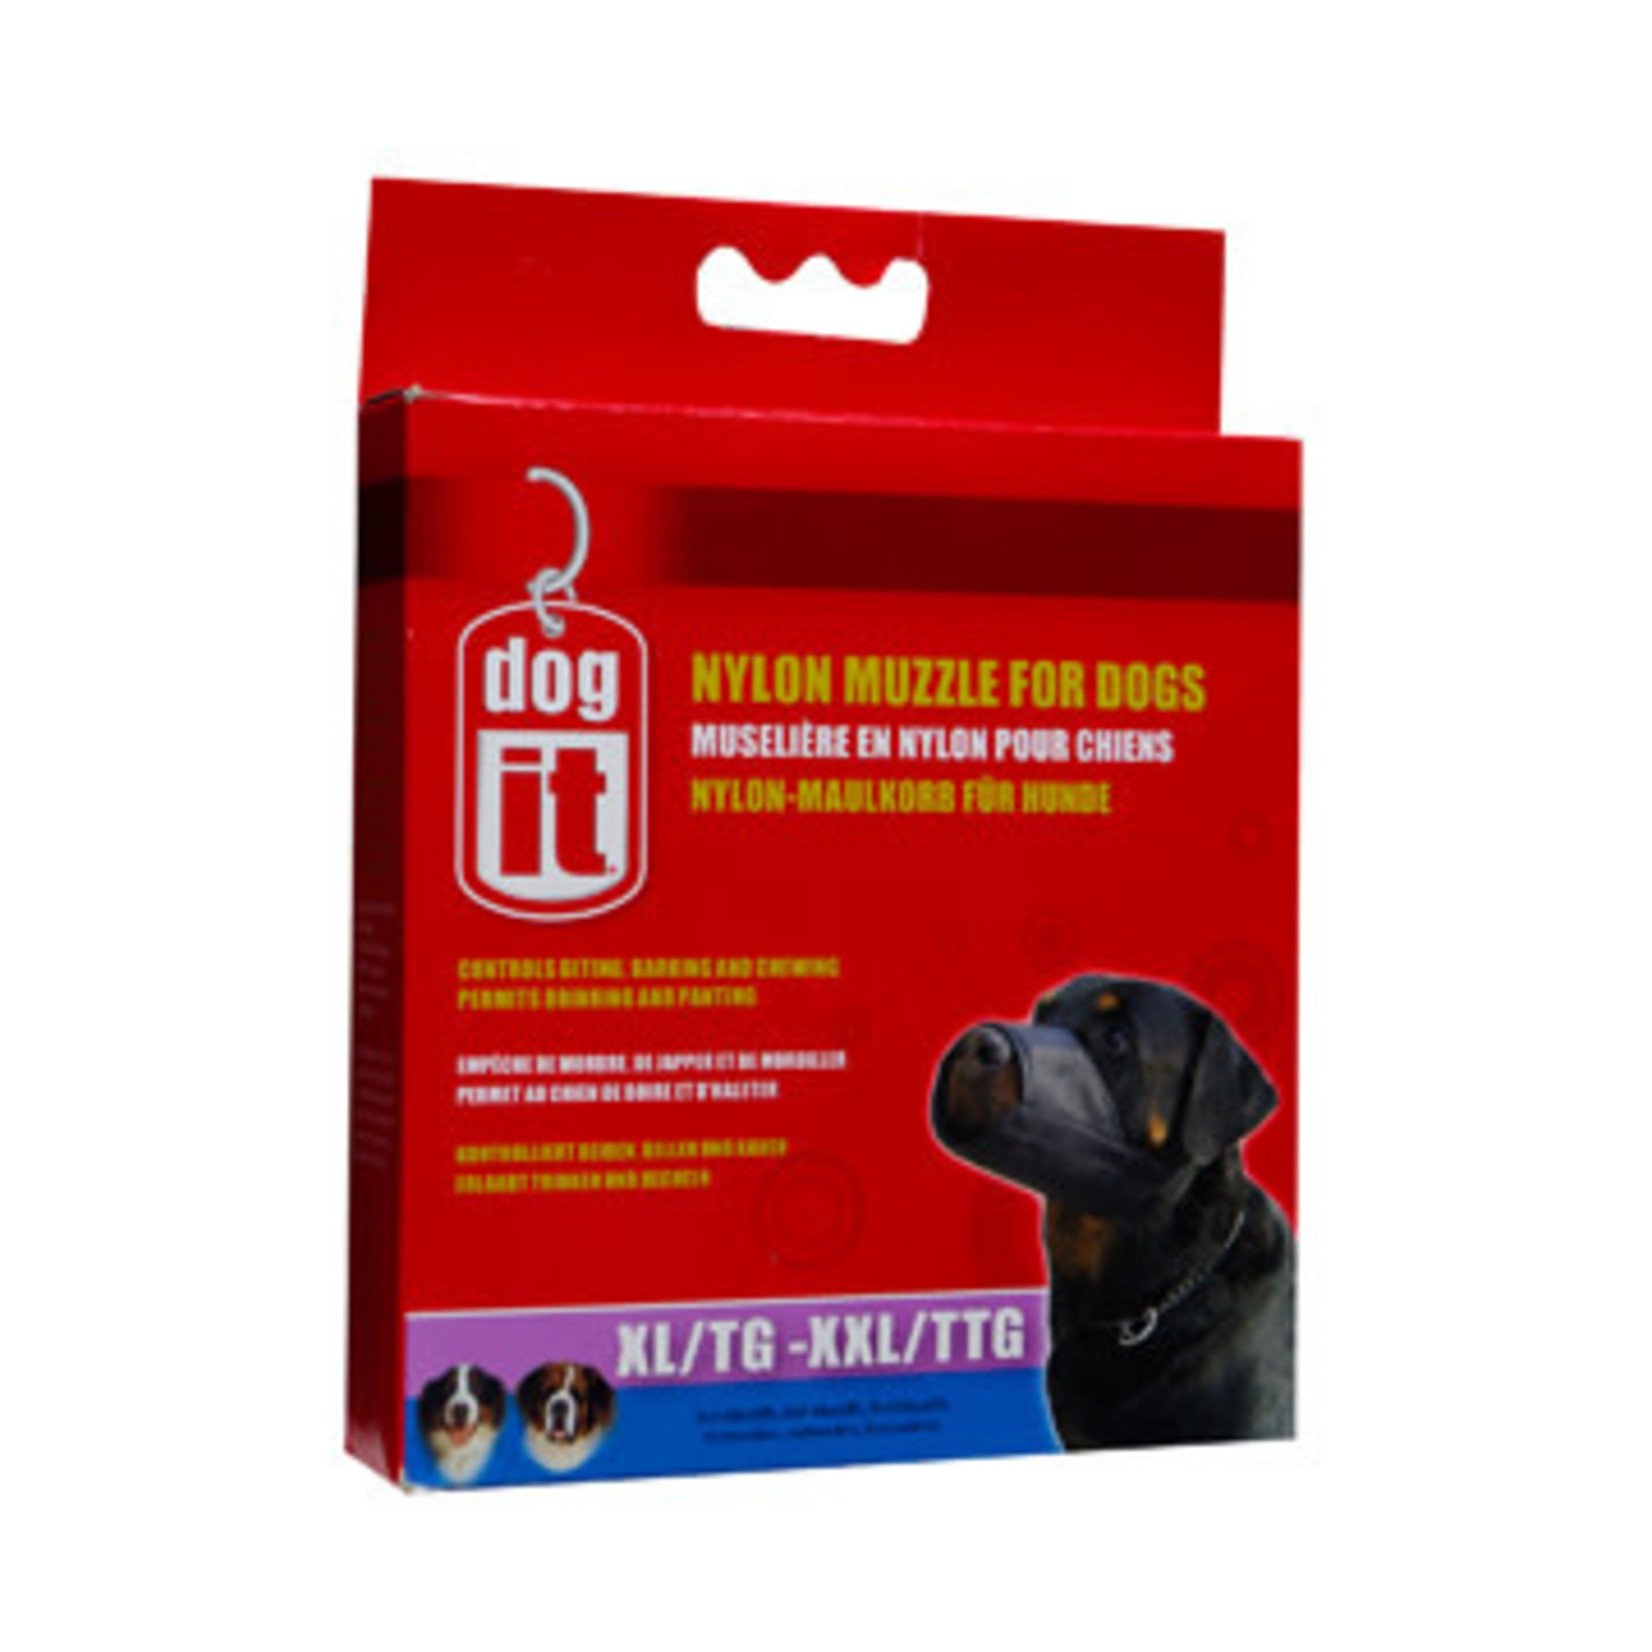 DogIt Dogit Nylon Dog Muzzle - Black - X Large to XX Large (24 cm / 9.4in)